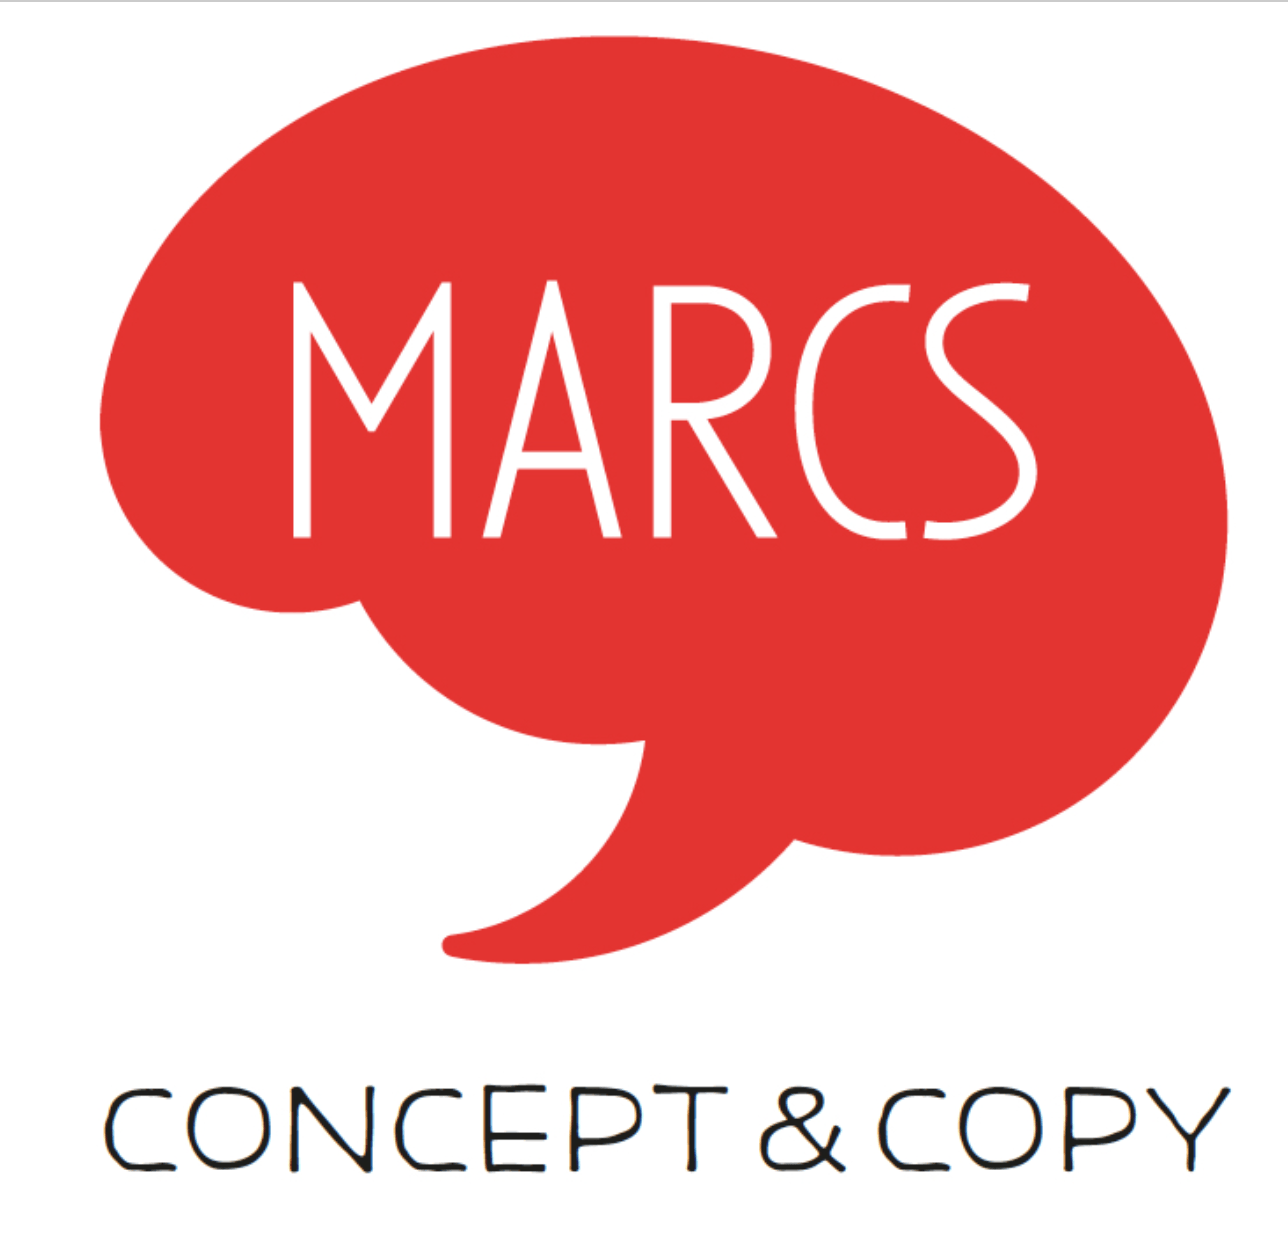 Marc's Logo - MARCS concept & copy